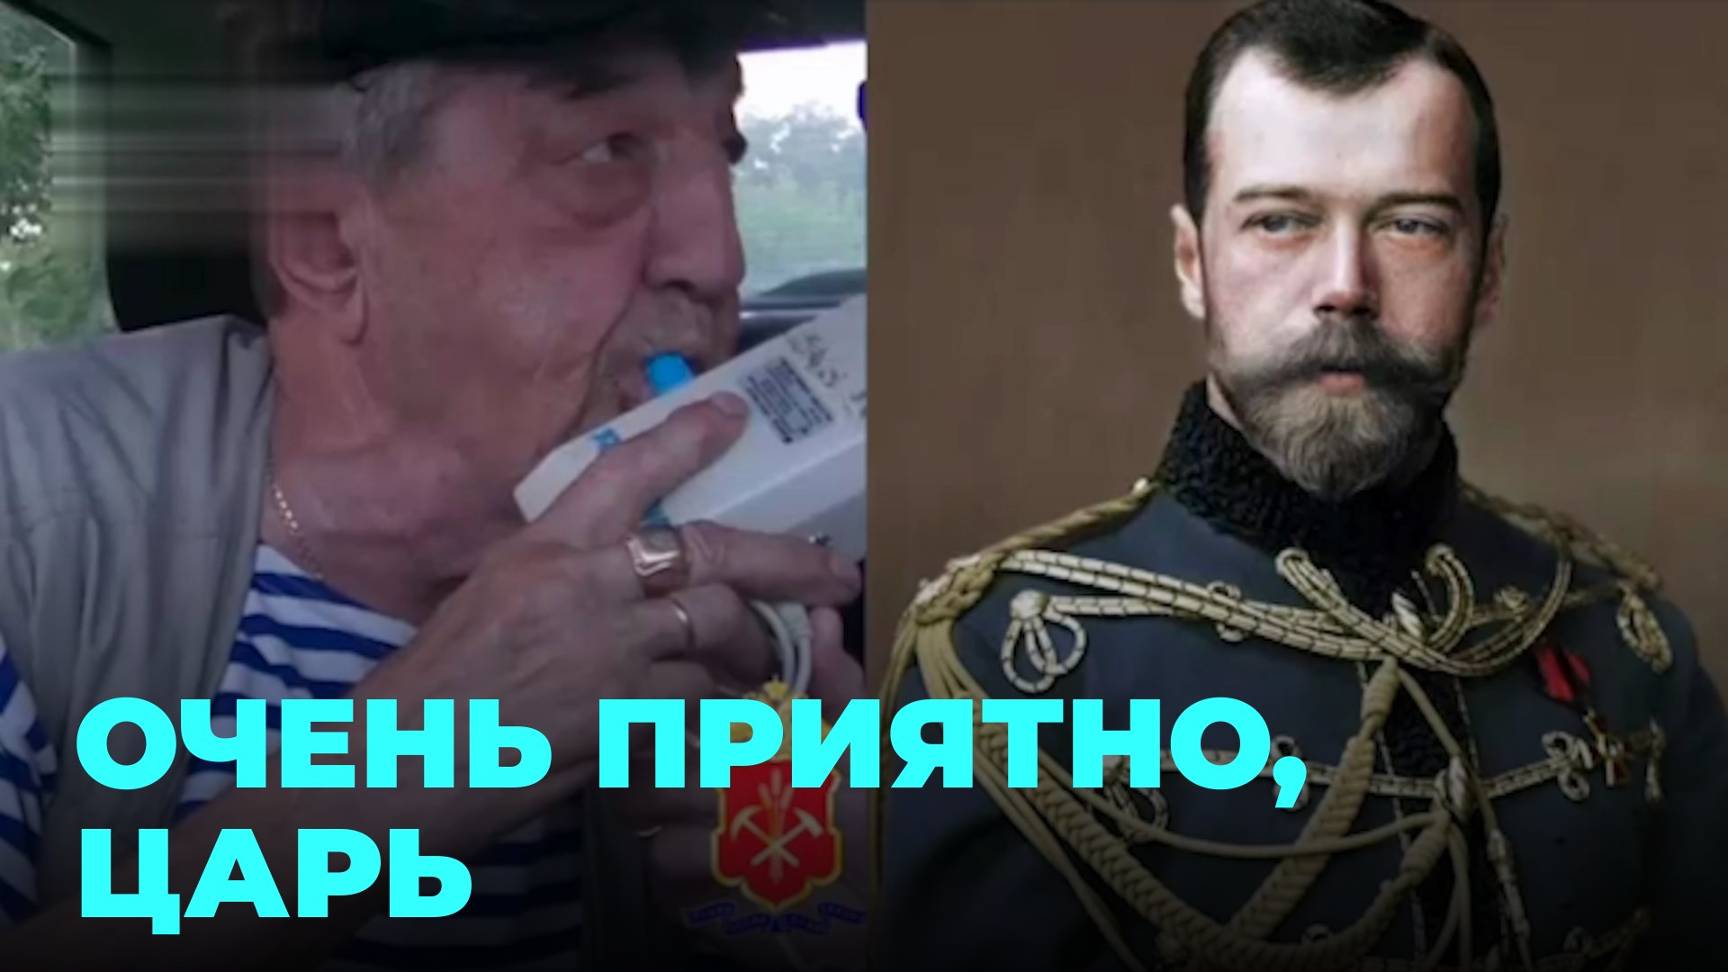 Царская кровь не помогла потомку Николая II избежать наказания